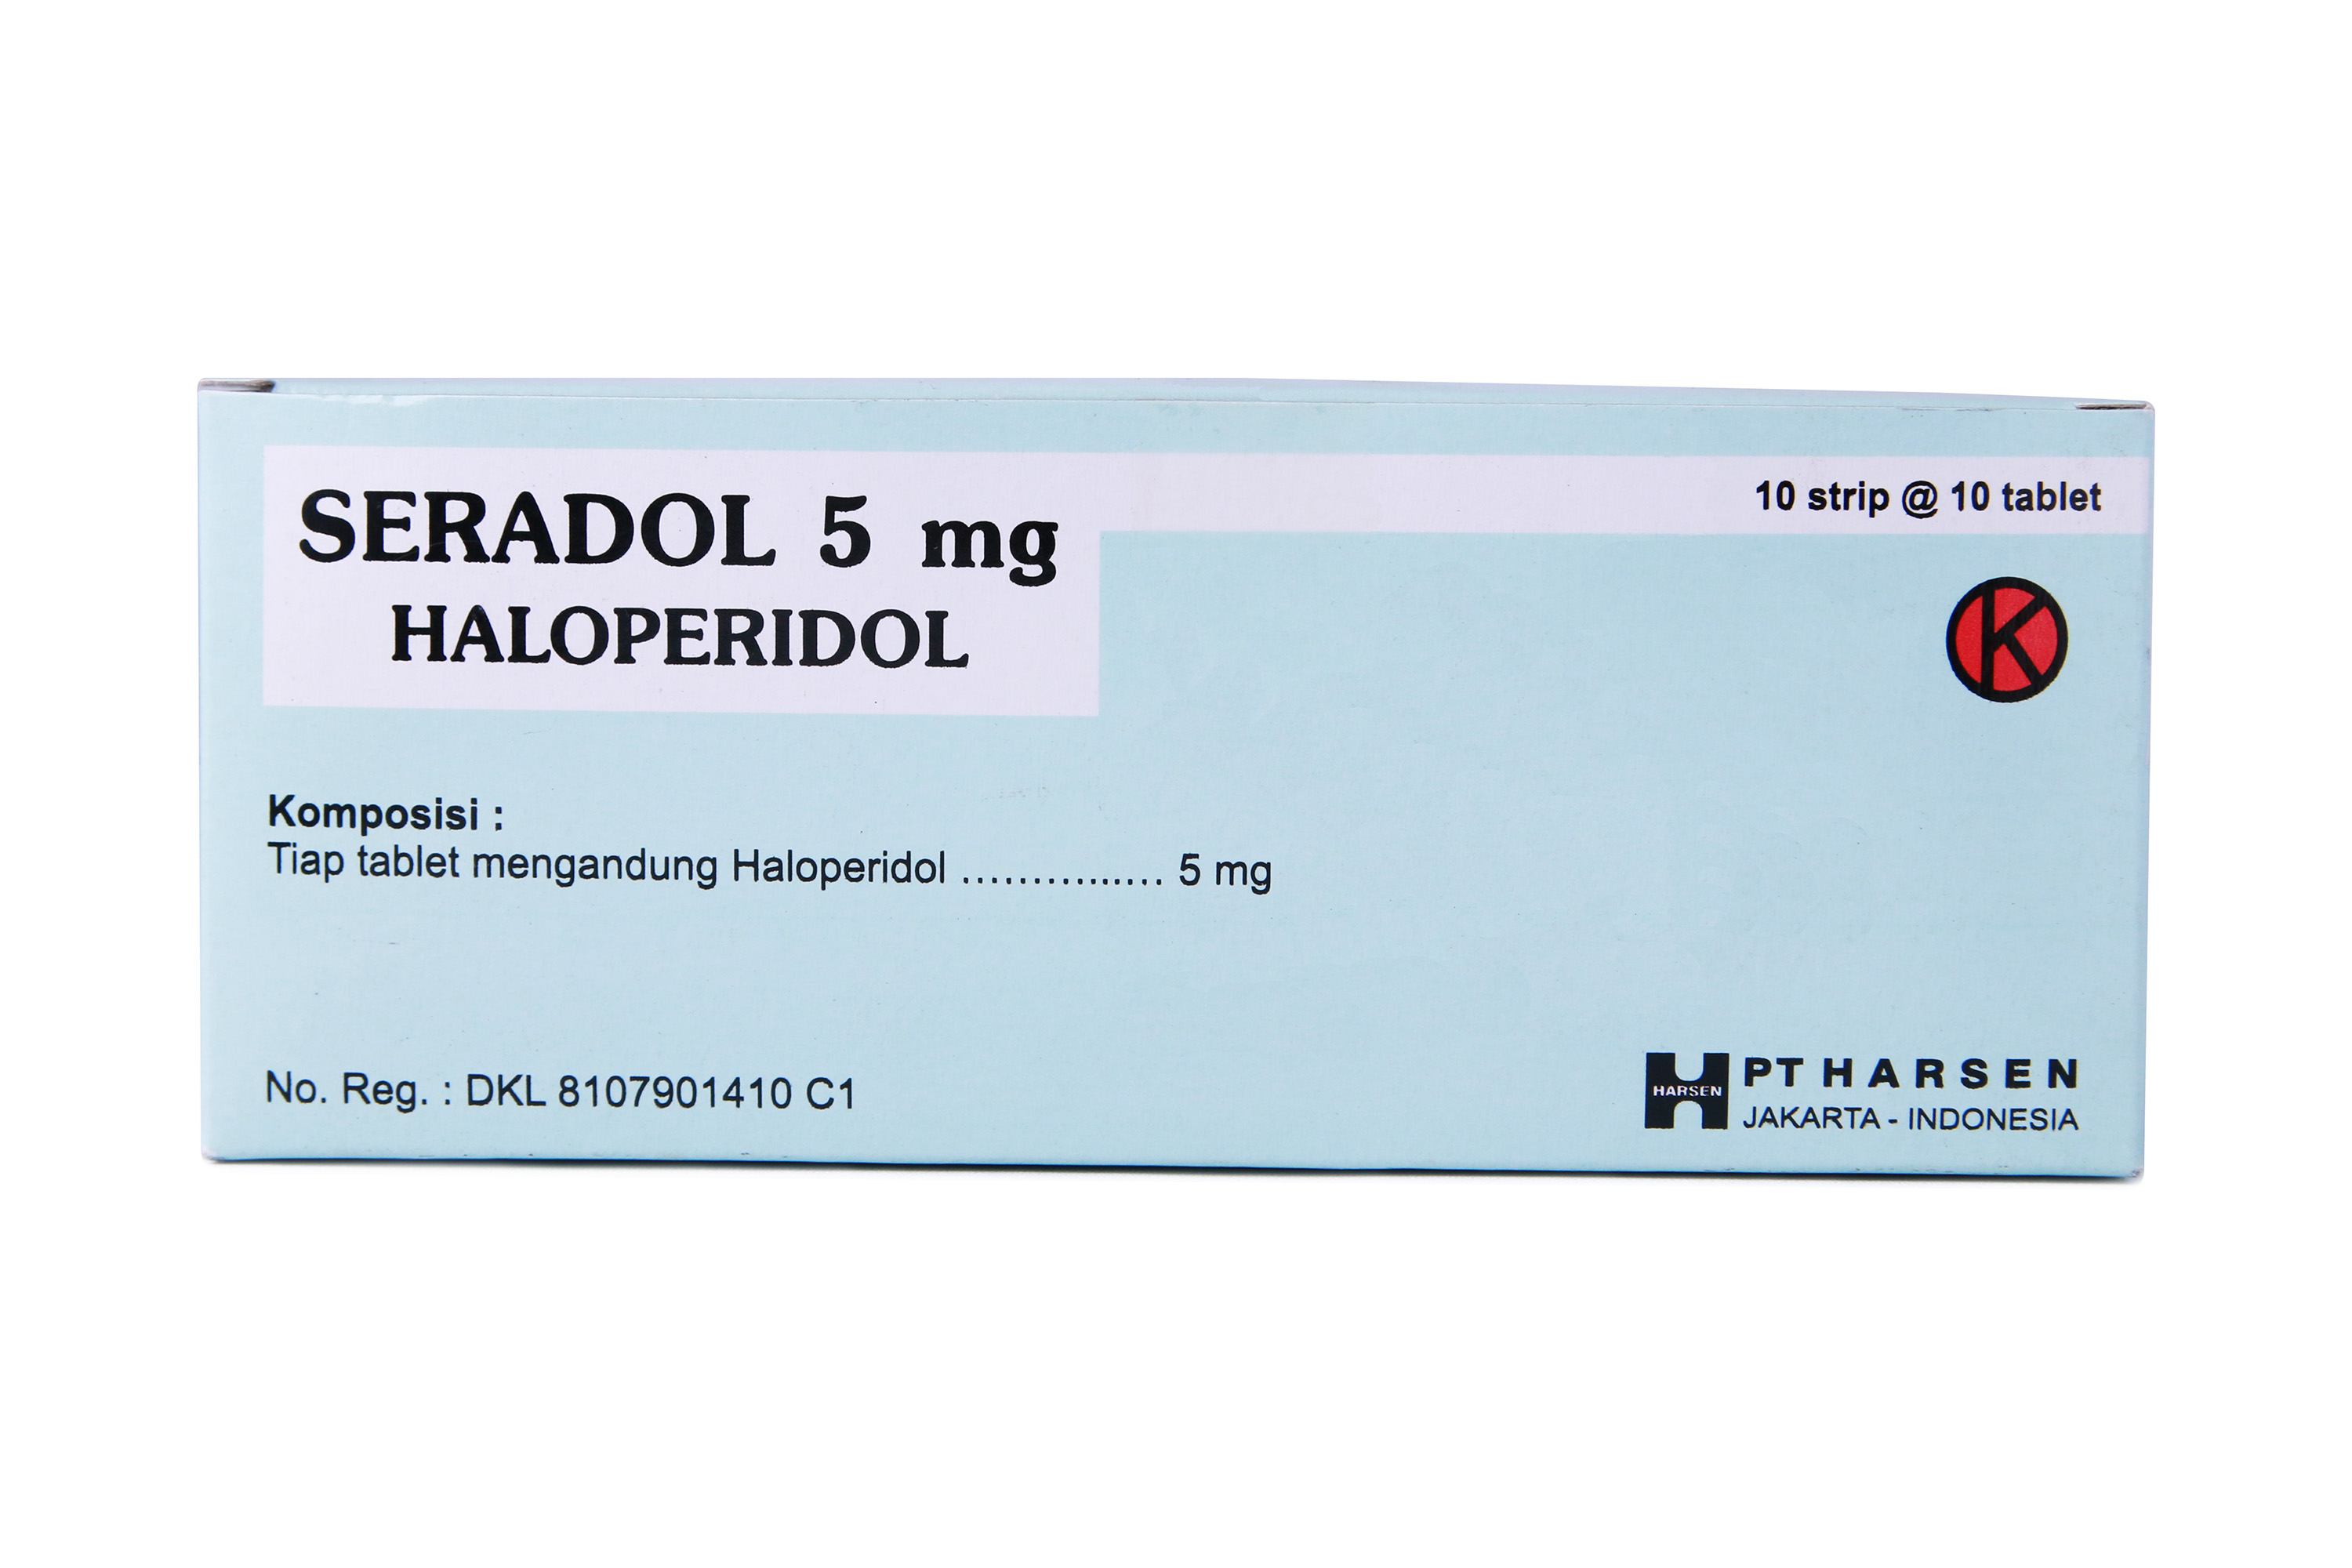 Seradol 5 mg